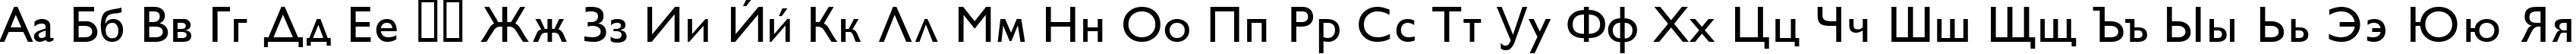 Пример написания русского алфавита шрифтом GillSans